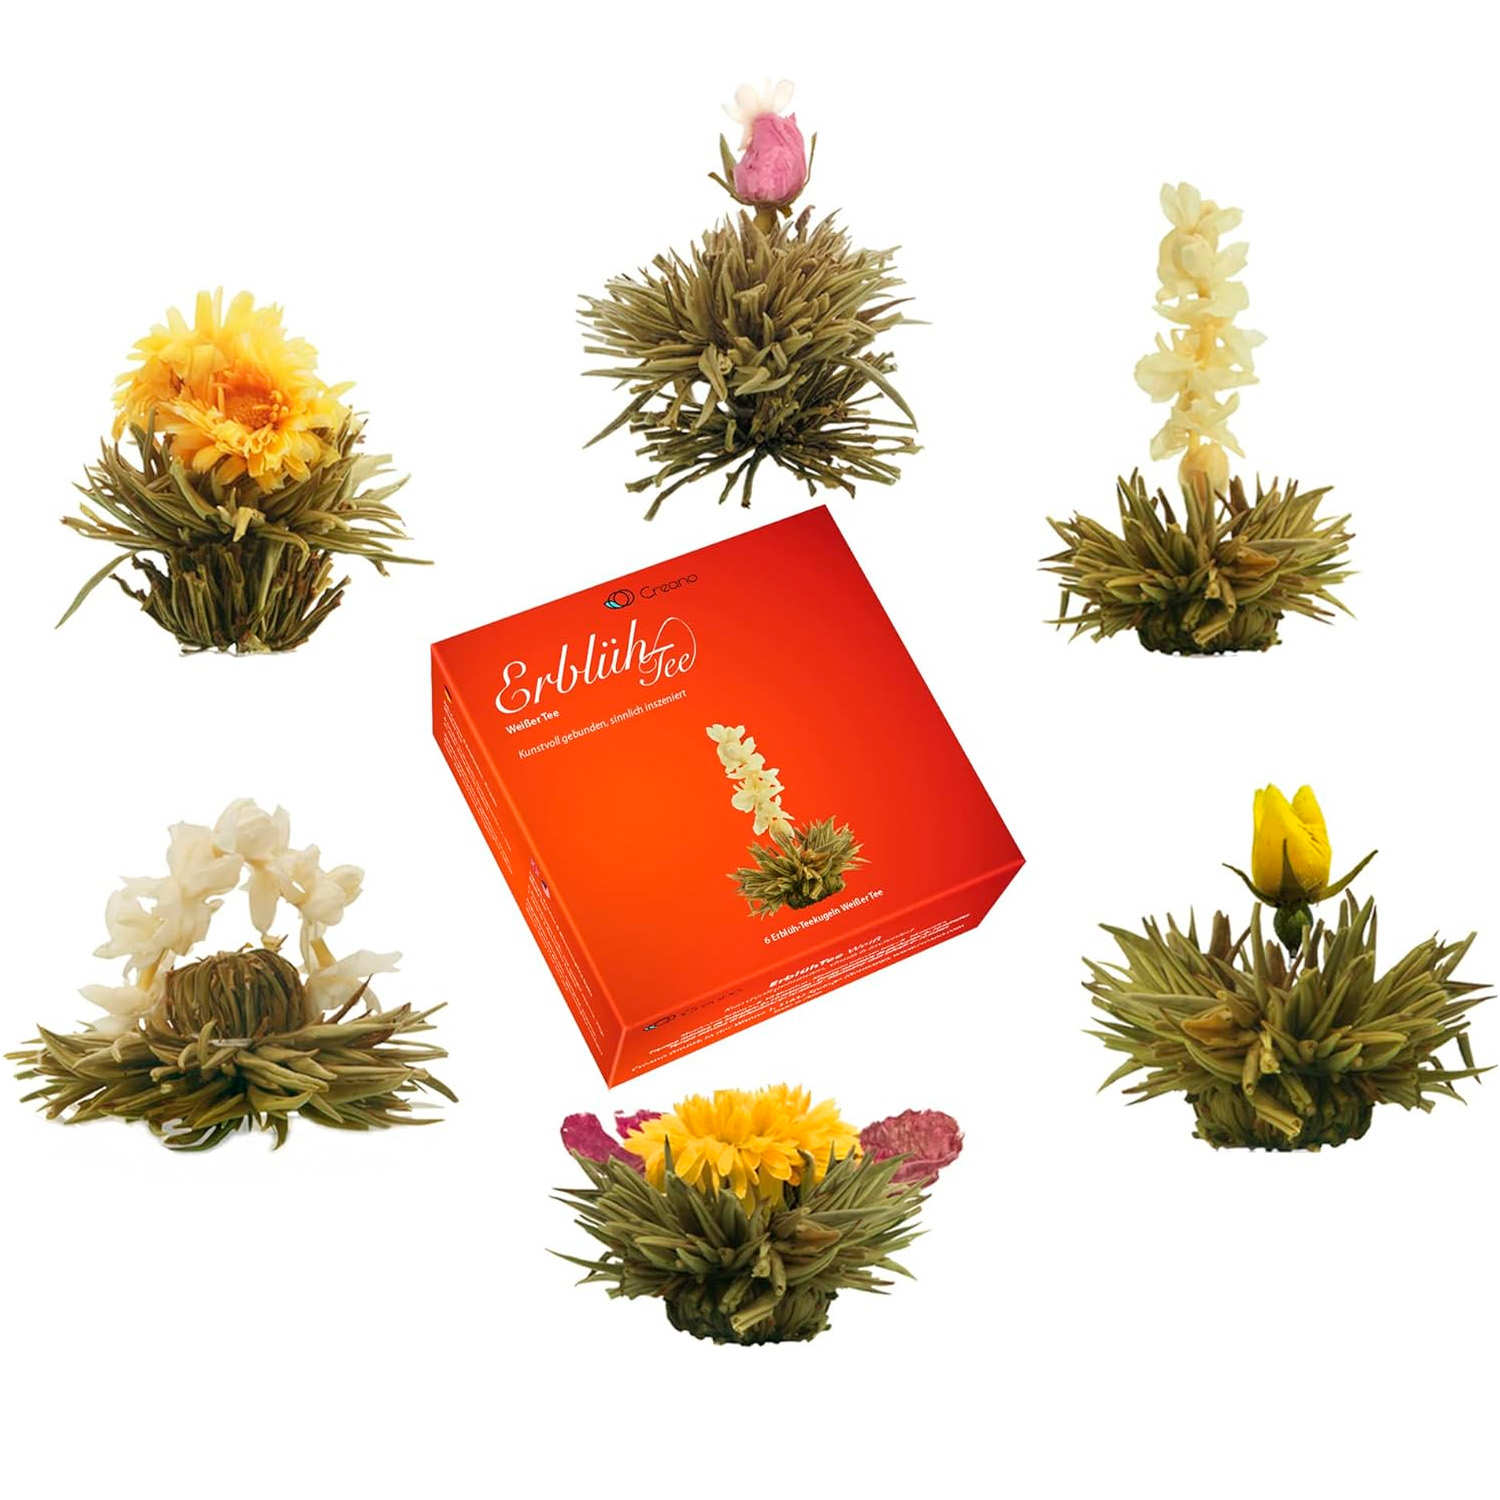 Coffret 6 fleurs de thé blanc - Creano